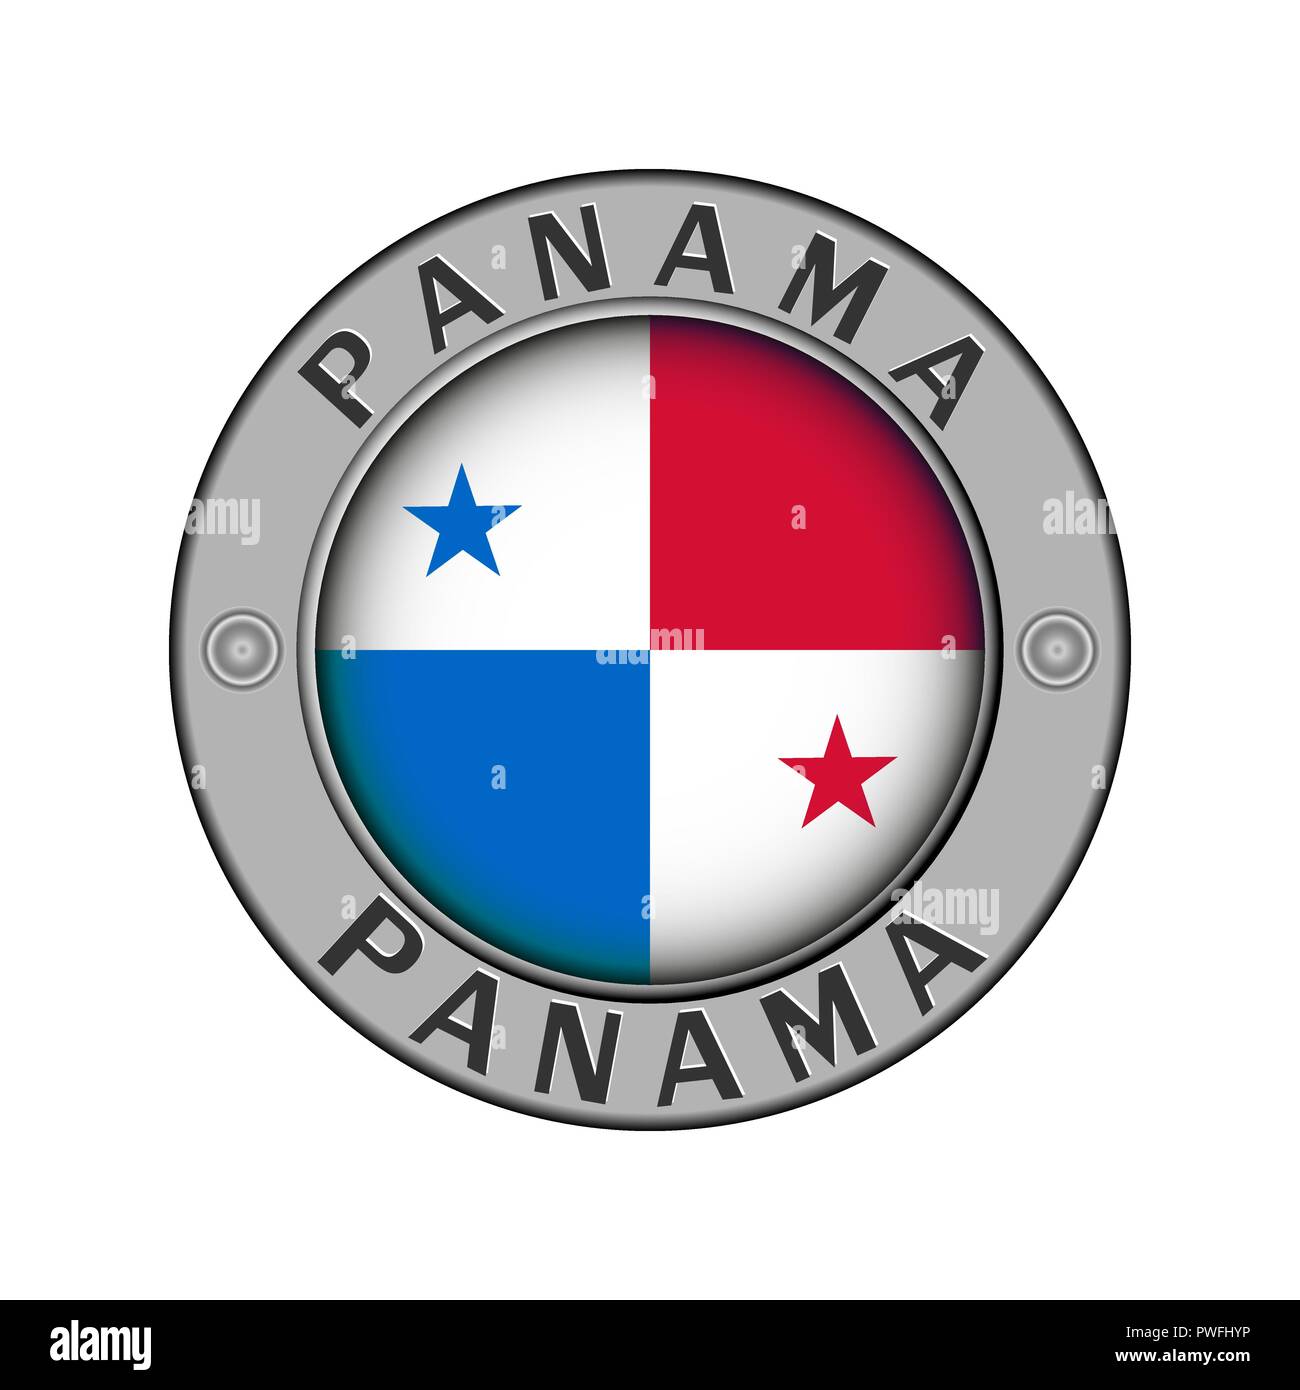 Rotondo di metallo medaglione con il nome del paese di Panama e un indicatore rotondo nel centro Illustrazione Vettoriale